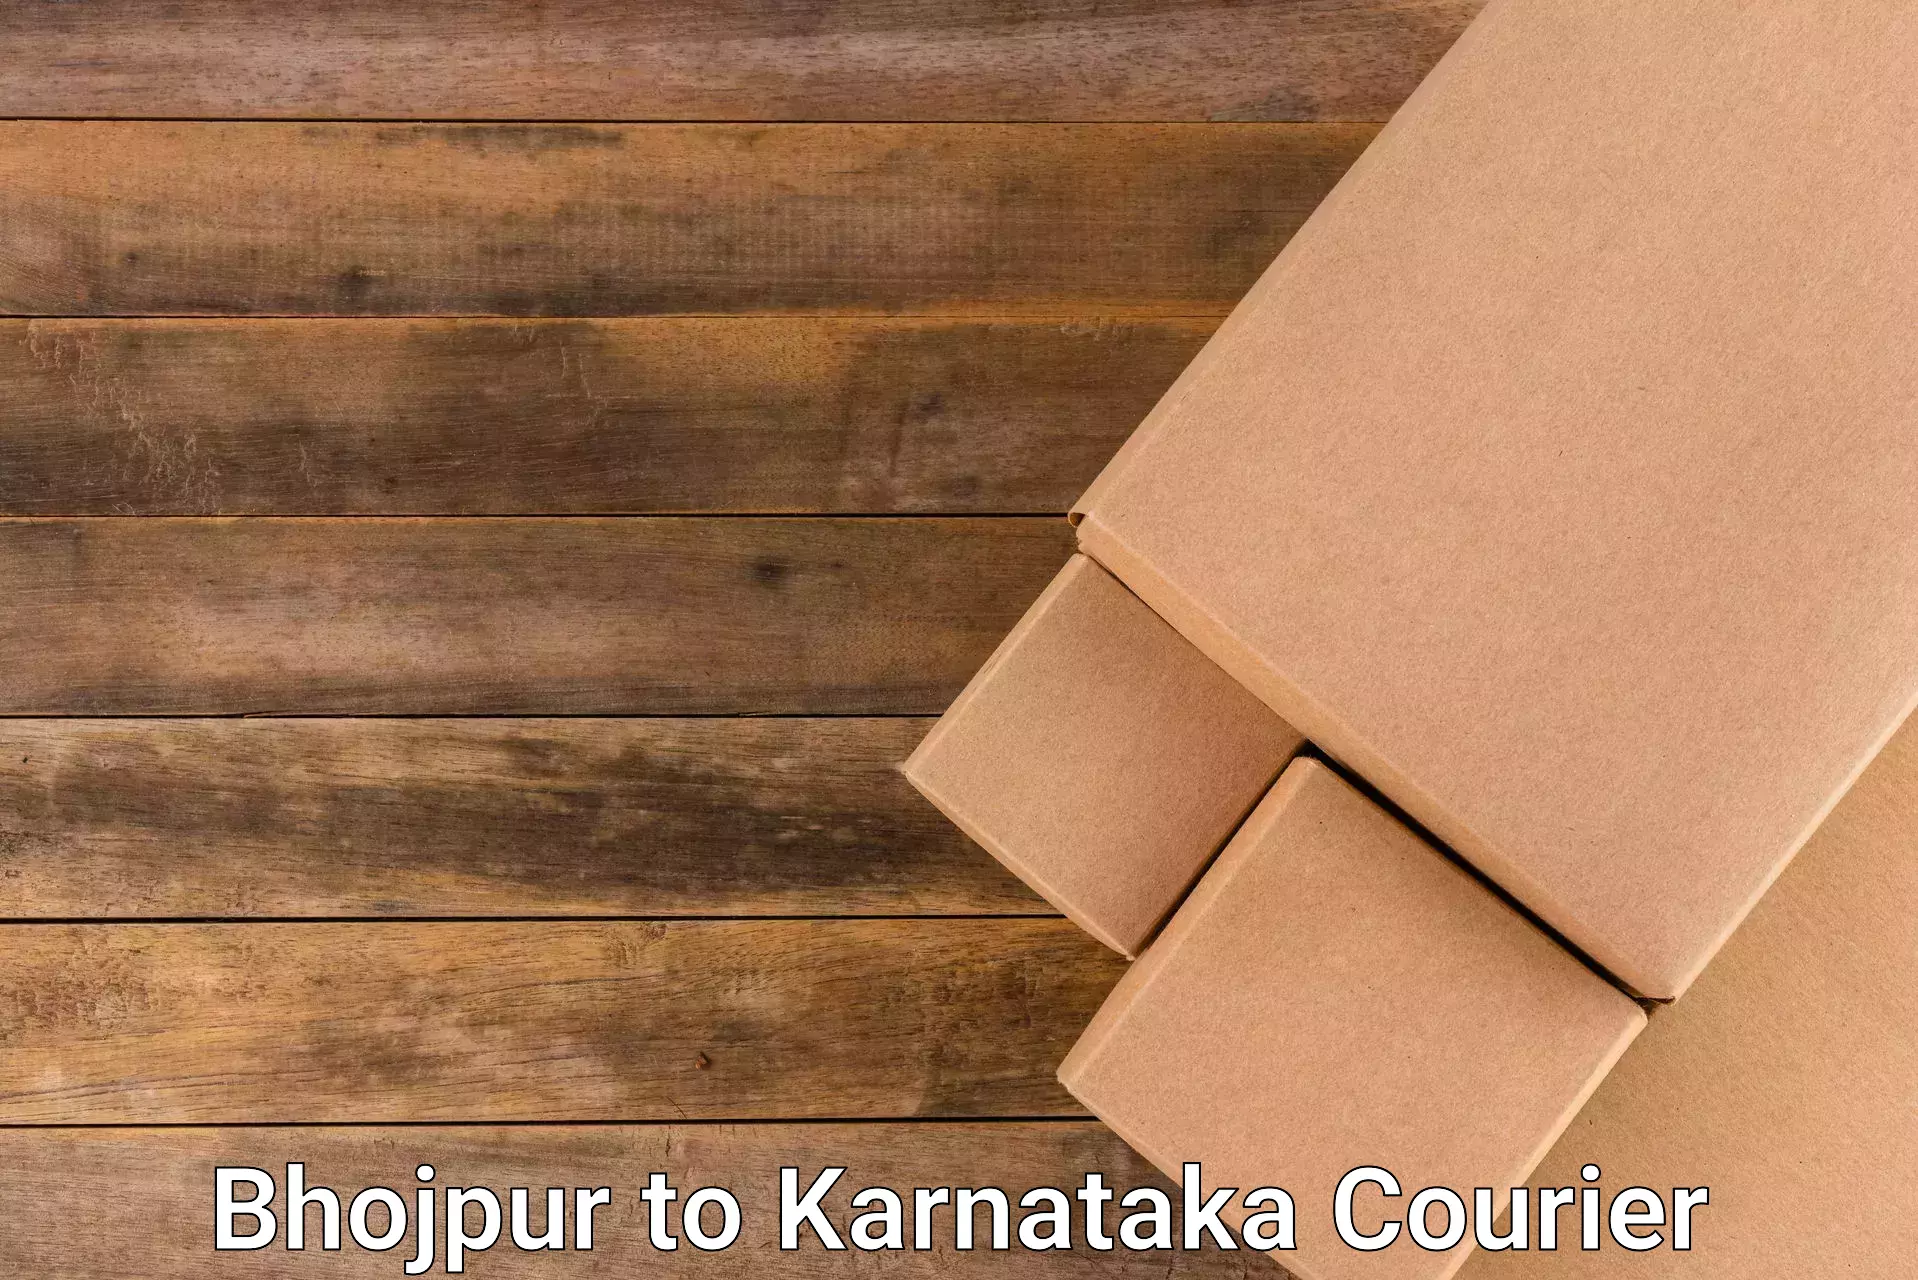 High-capacity parcel service Bhojpur to Raichur